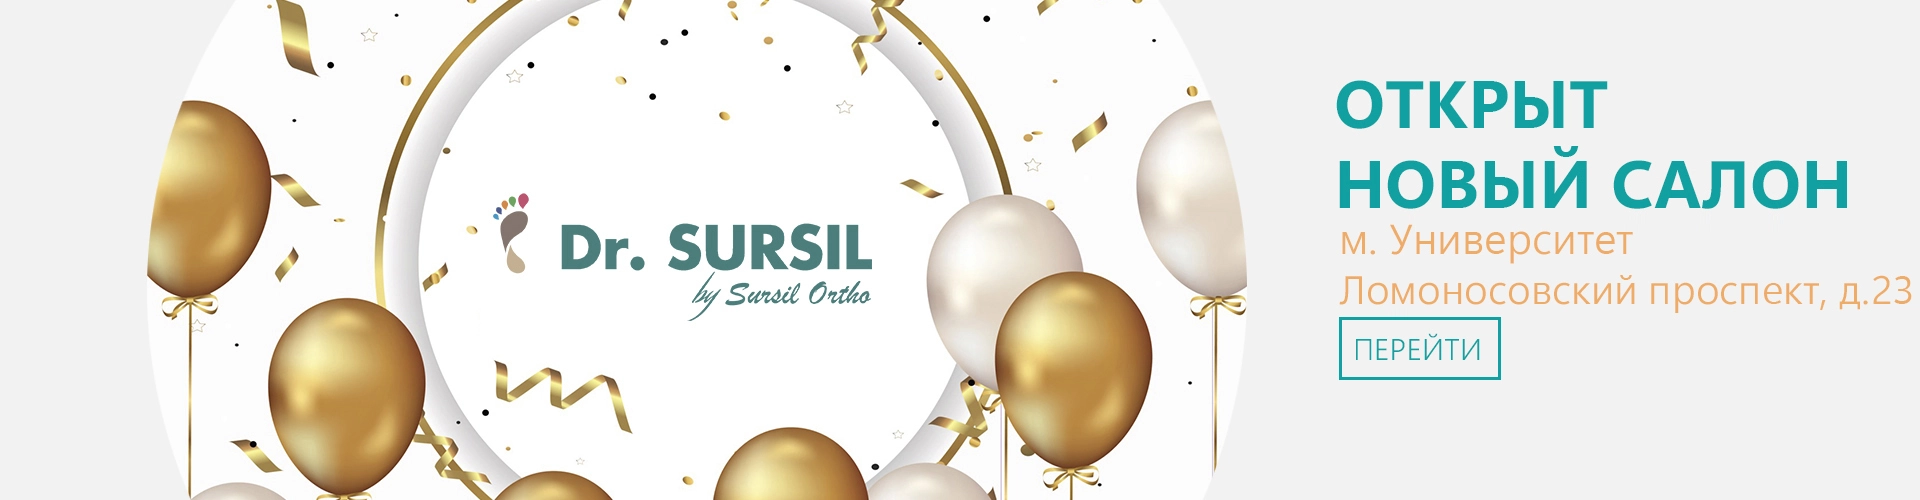 Открыт новый салон  Dr.SURSIL «Университет»